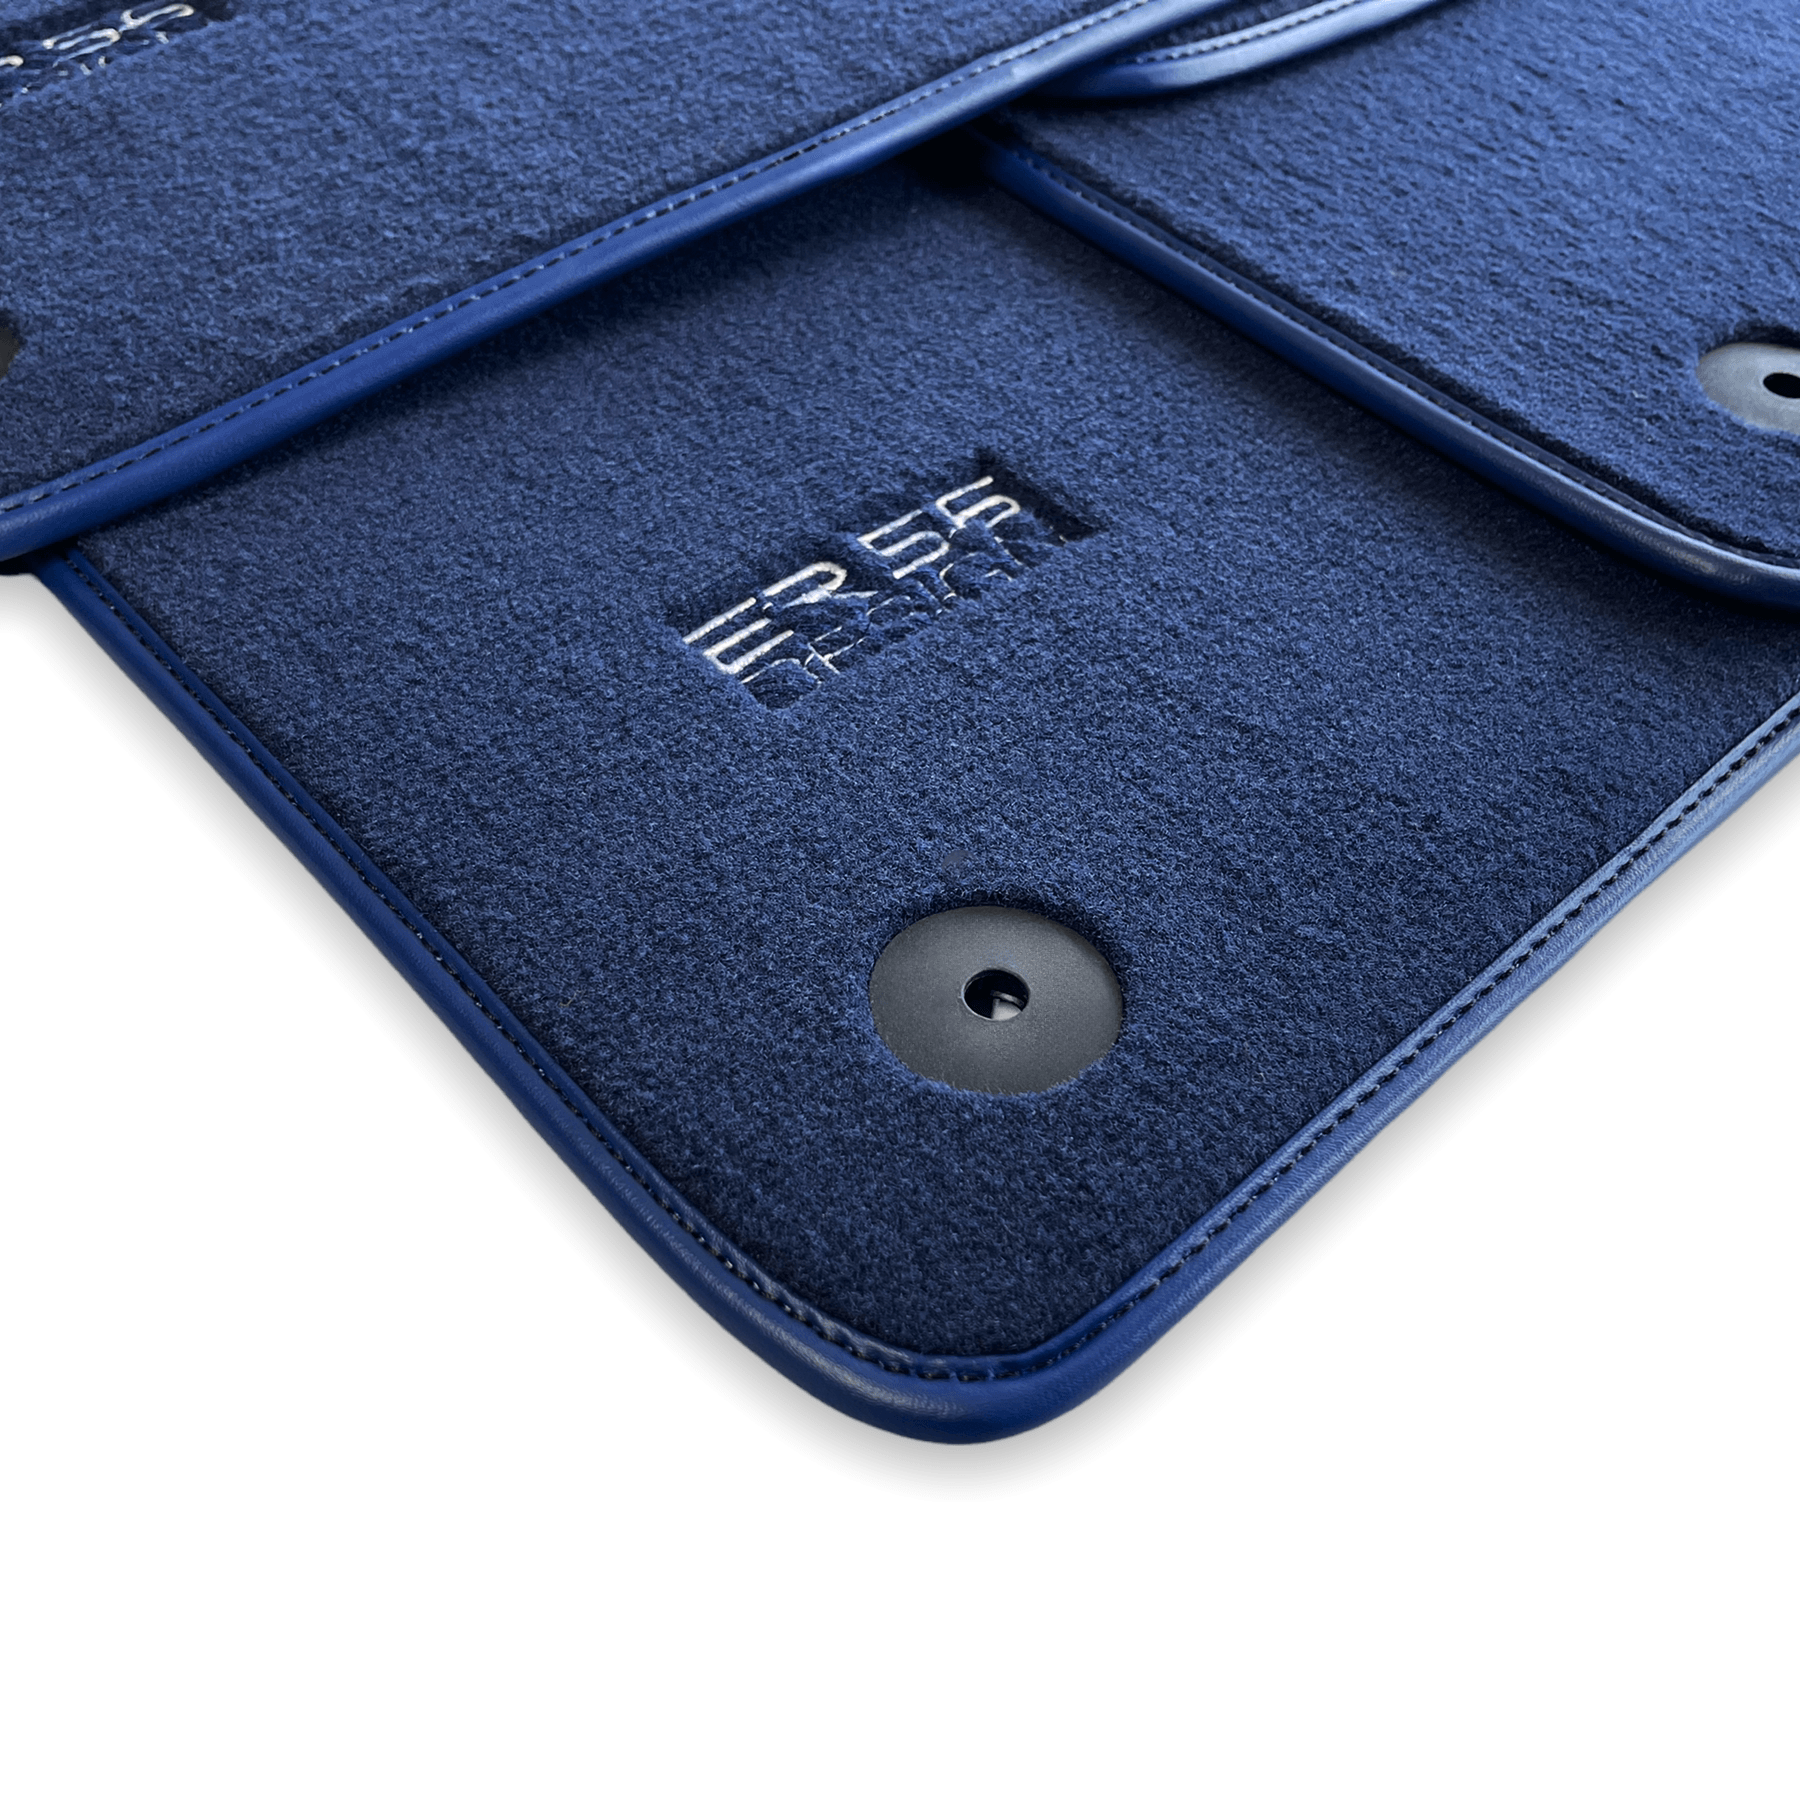 Dark Blue Floor Mats for Audi A4 - B9 Sedan (2015-2018) | ER56 Design